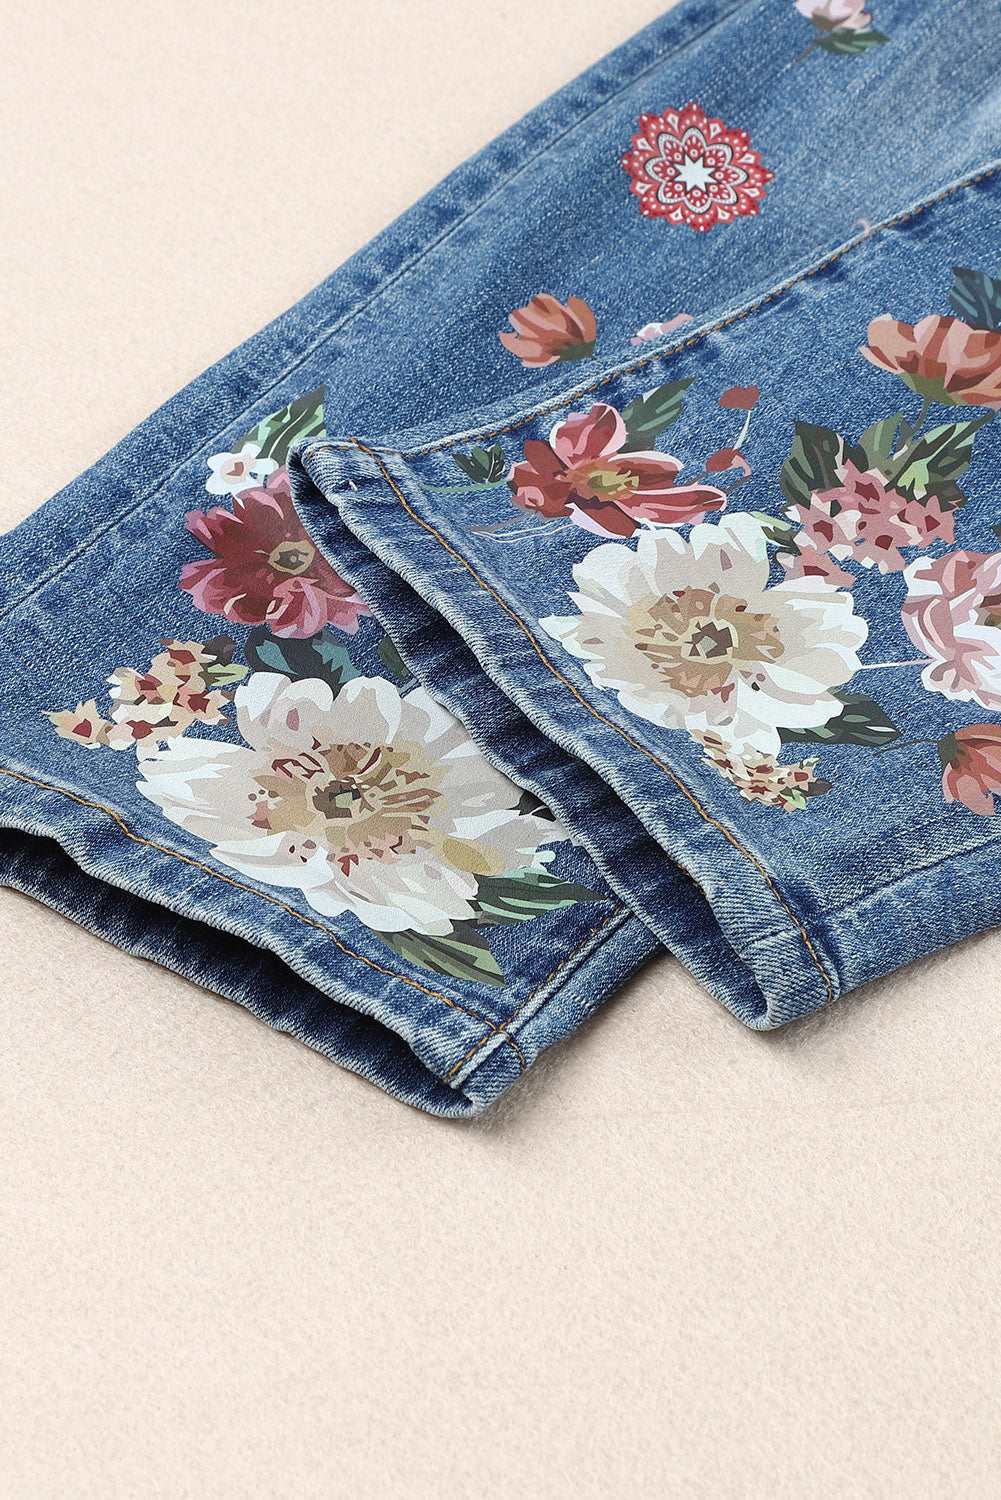 Floral Graphic Patchwork Distressed Jeans - DromedarShop.com Online Boutique